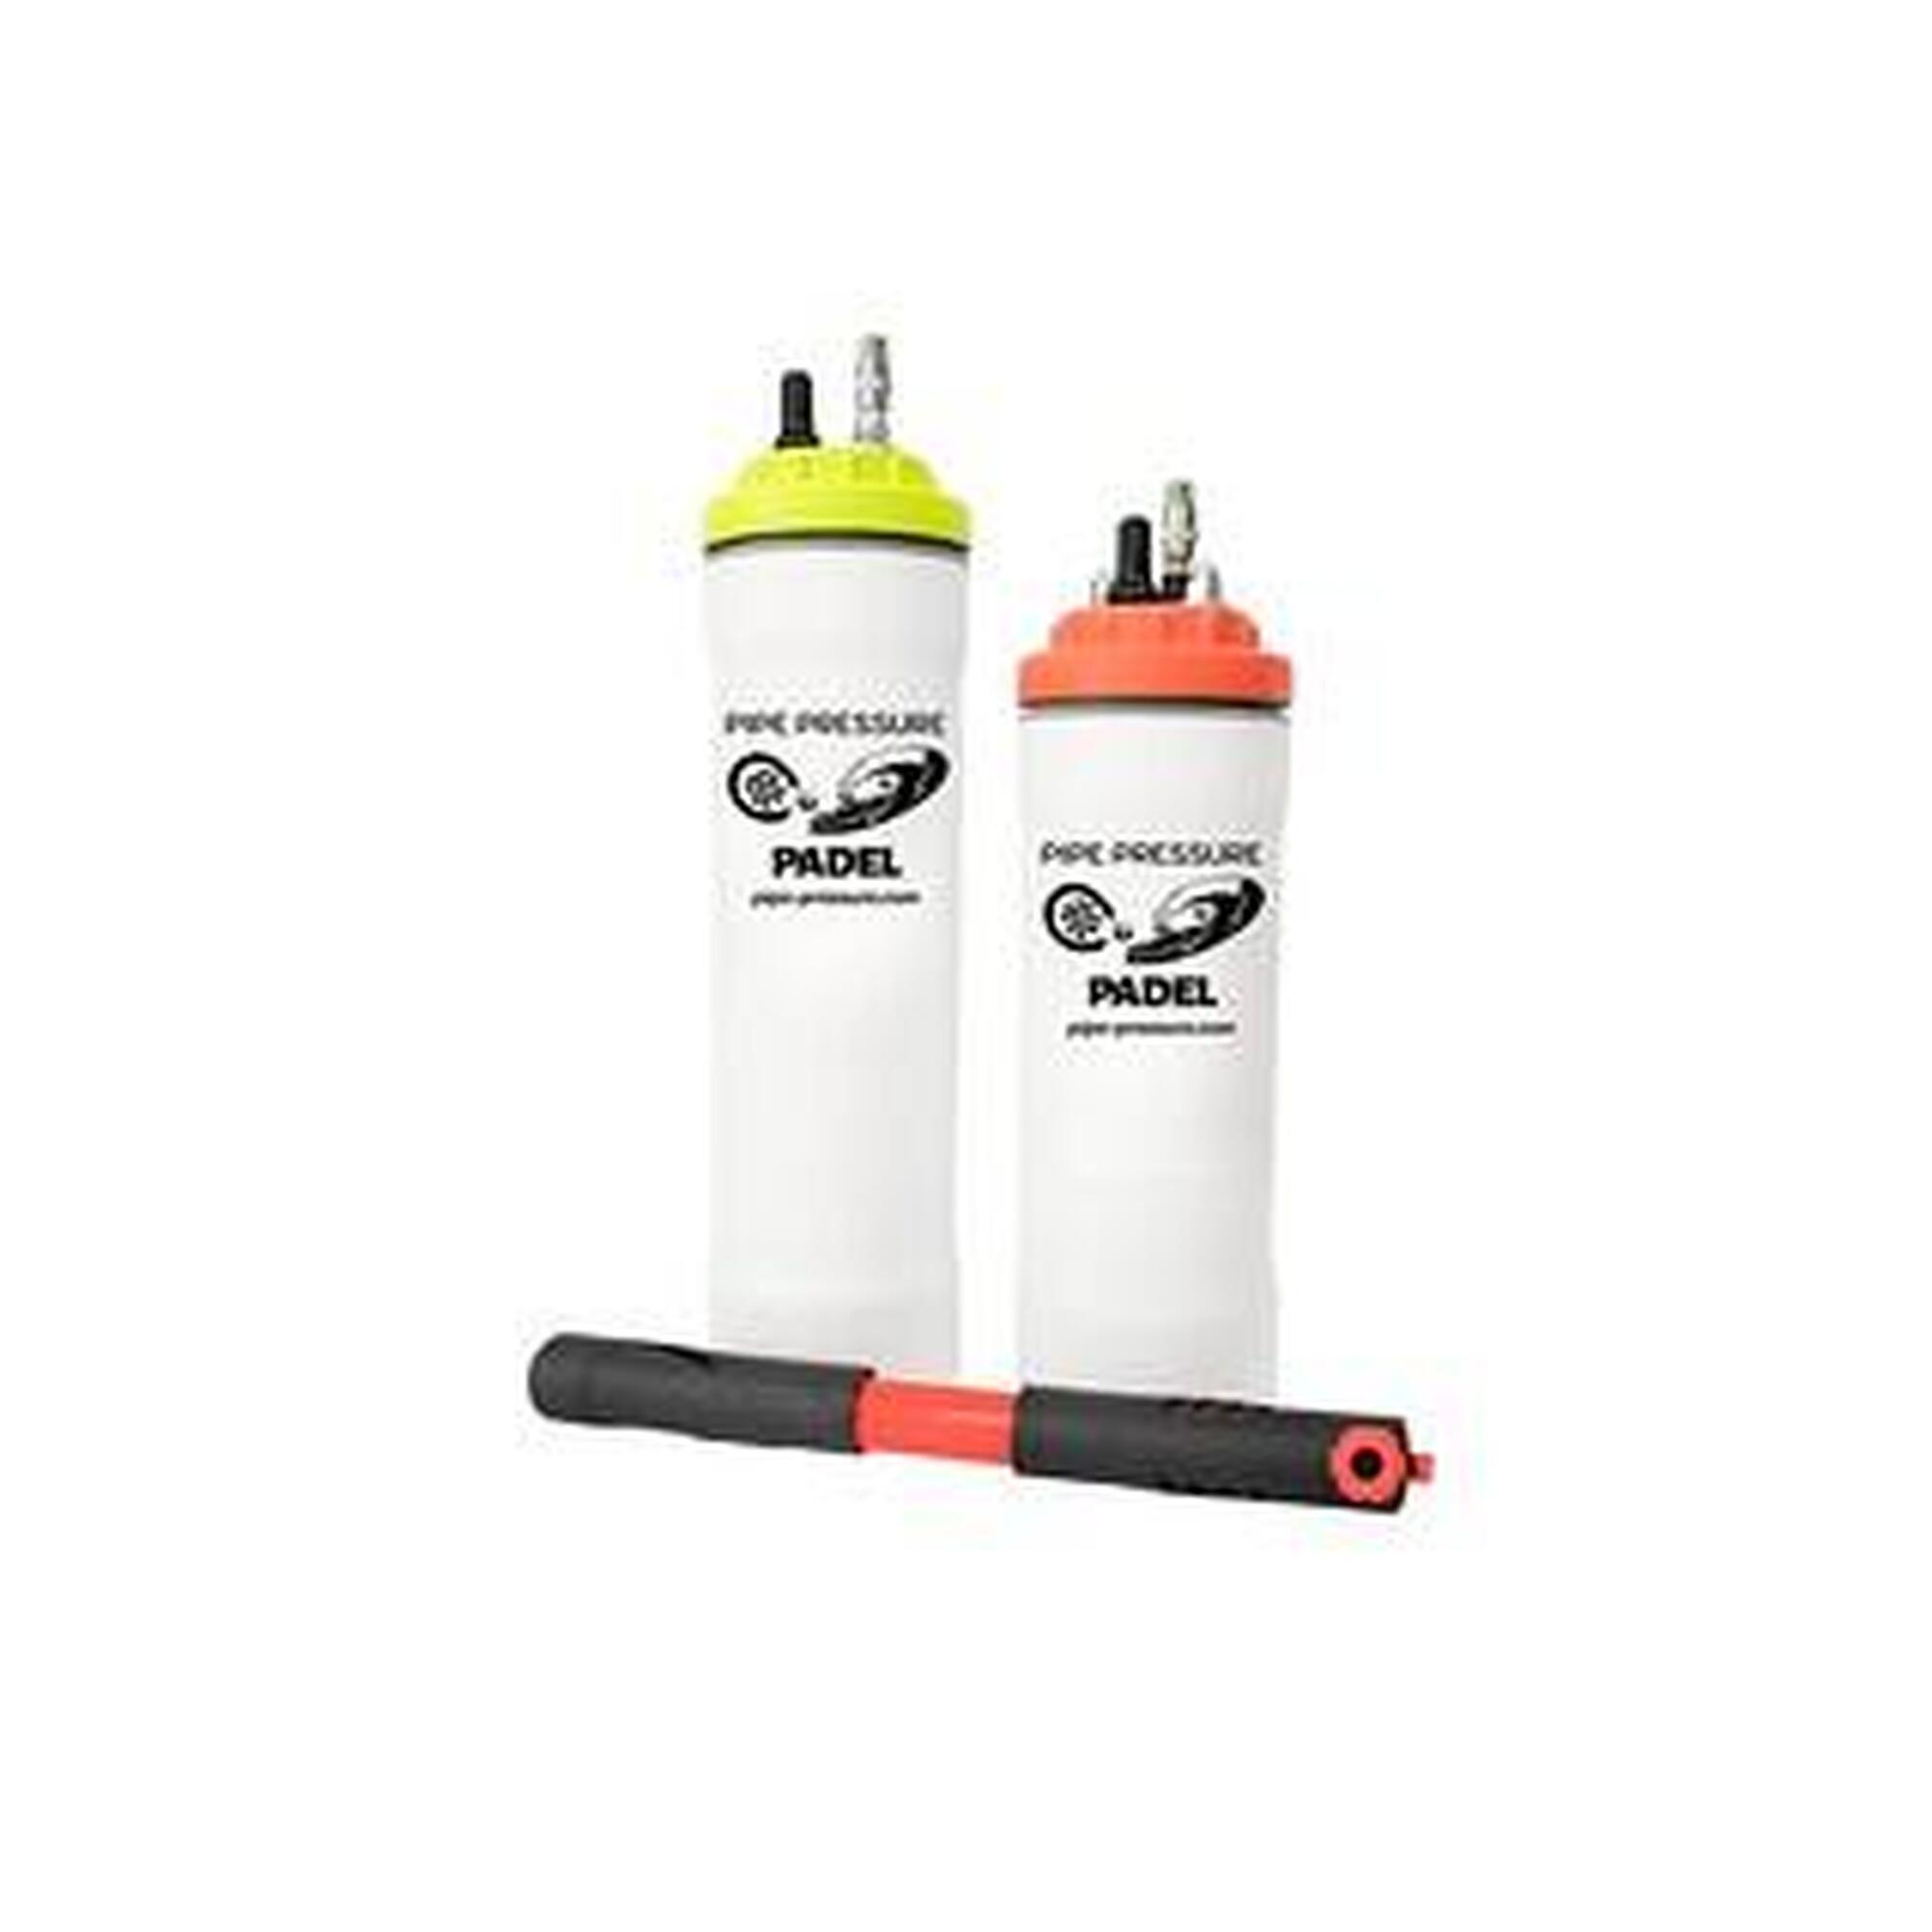 Pressurizzatore per padel e palline da tennis(3 palline con pompa)-colore giallo